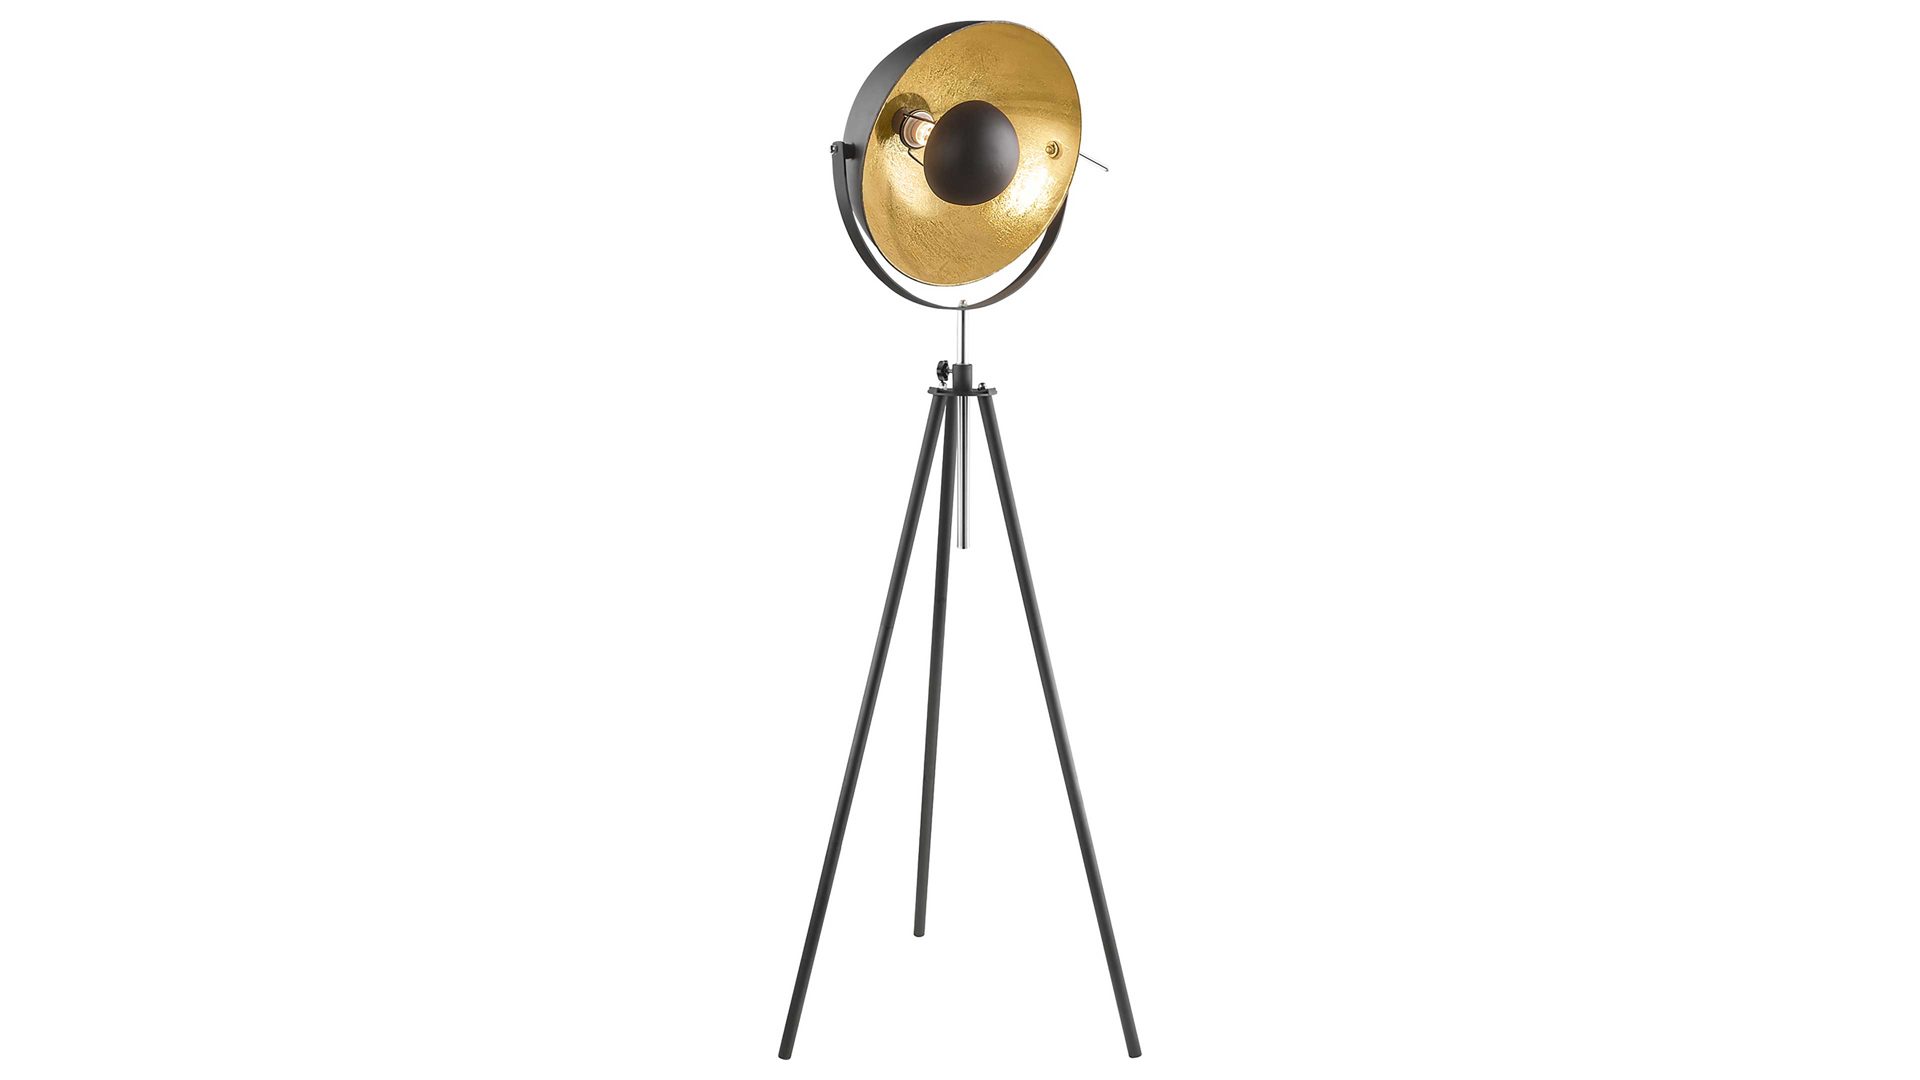 Stehleuchte Globo lighting aus Metall in Schwarz GLOBO Stativ-Stehleuchte Lenn goldfarbenes & schwarzes Metall – Höhe ca. 179 cm